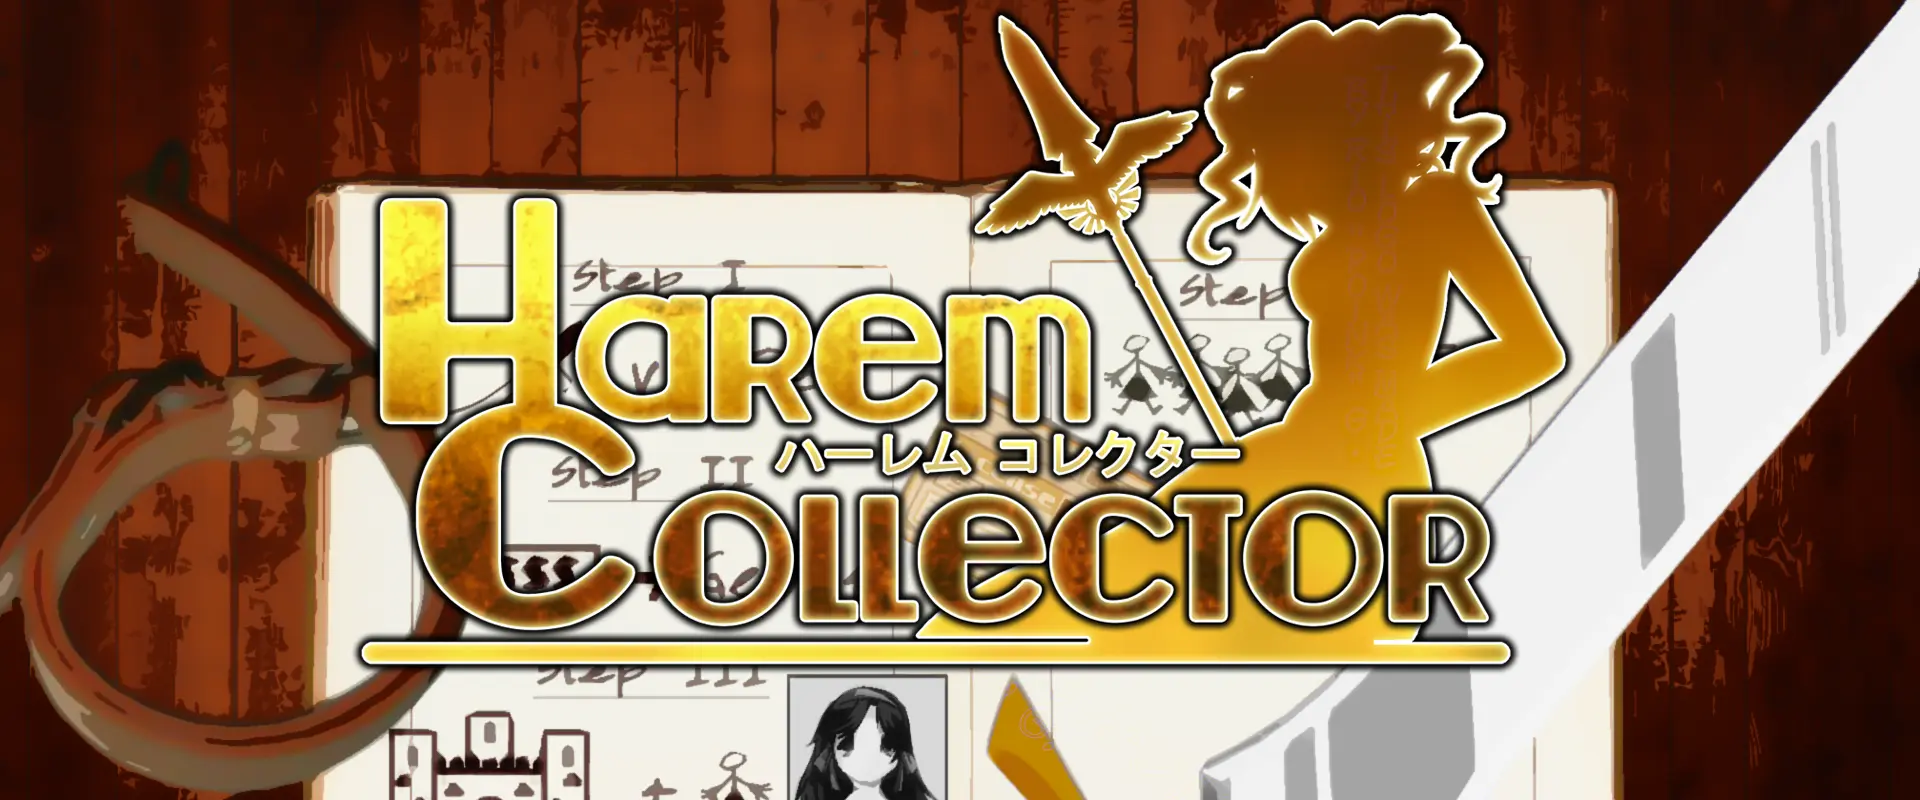 Harem Collector header image